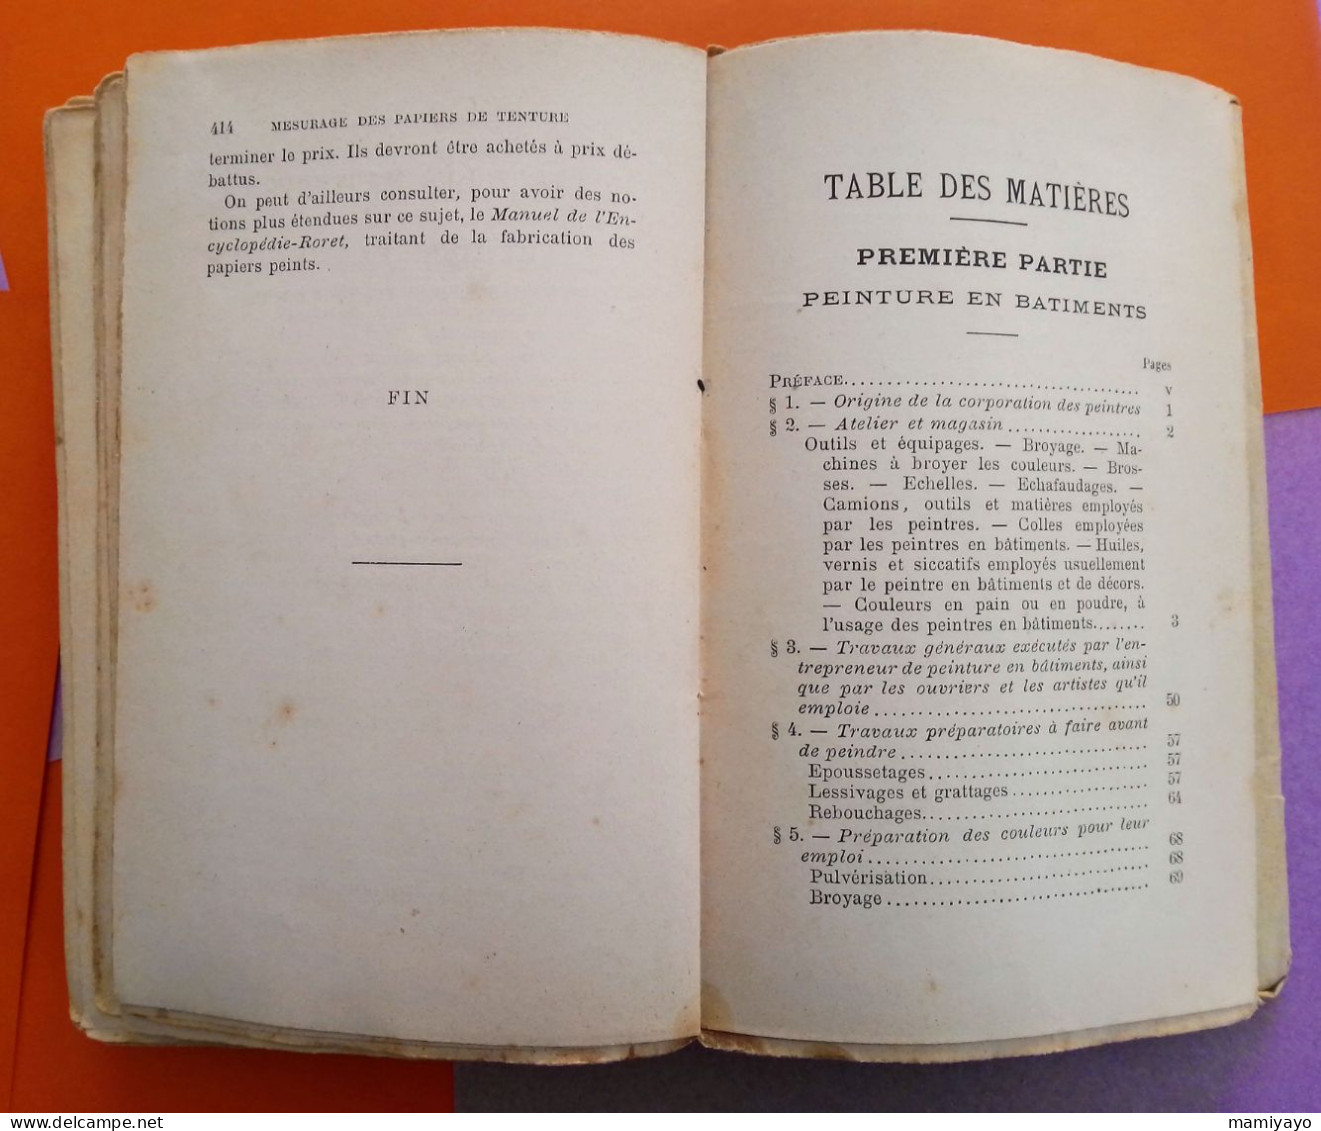 Nouveau manuel complet du PEINTRE EN BATIMENTS Vernisseur, vitrier et colleur de papiers de tenture / Roret 1896.